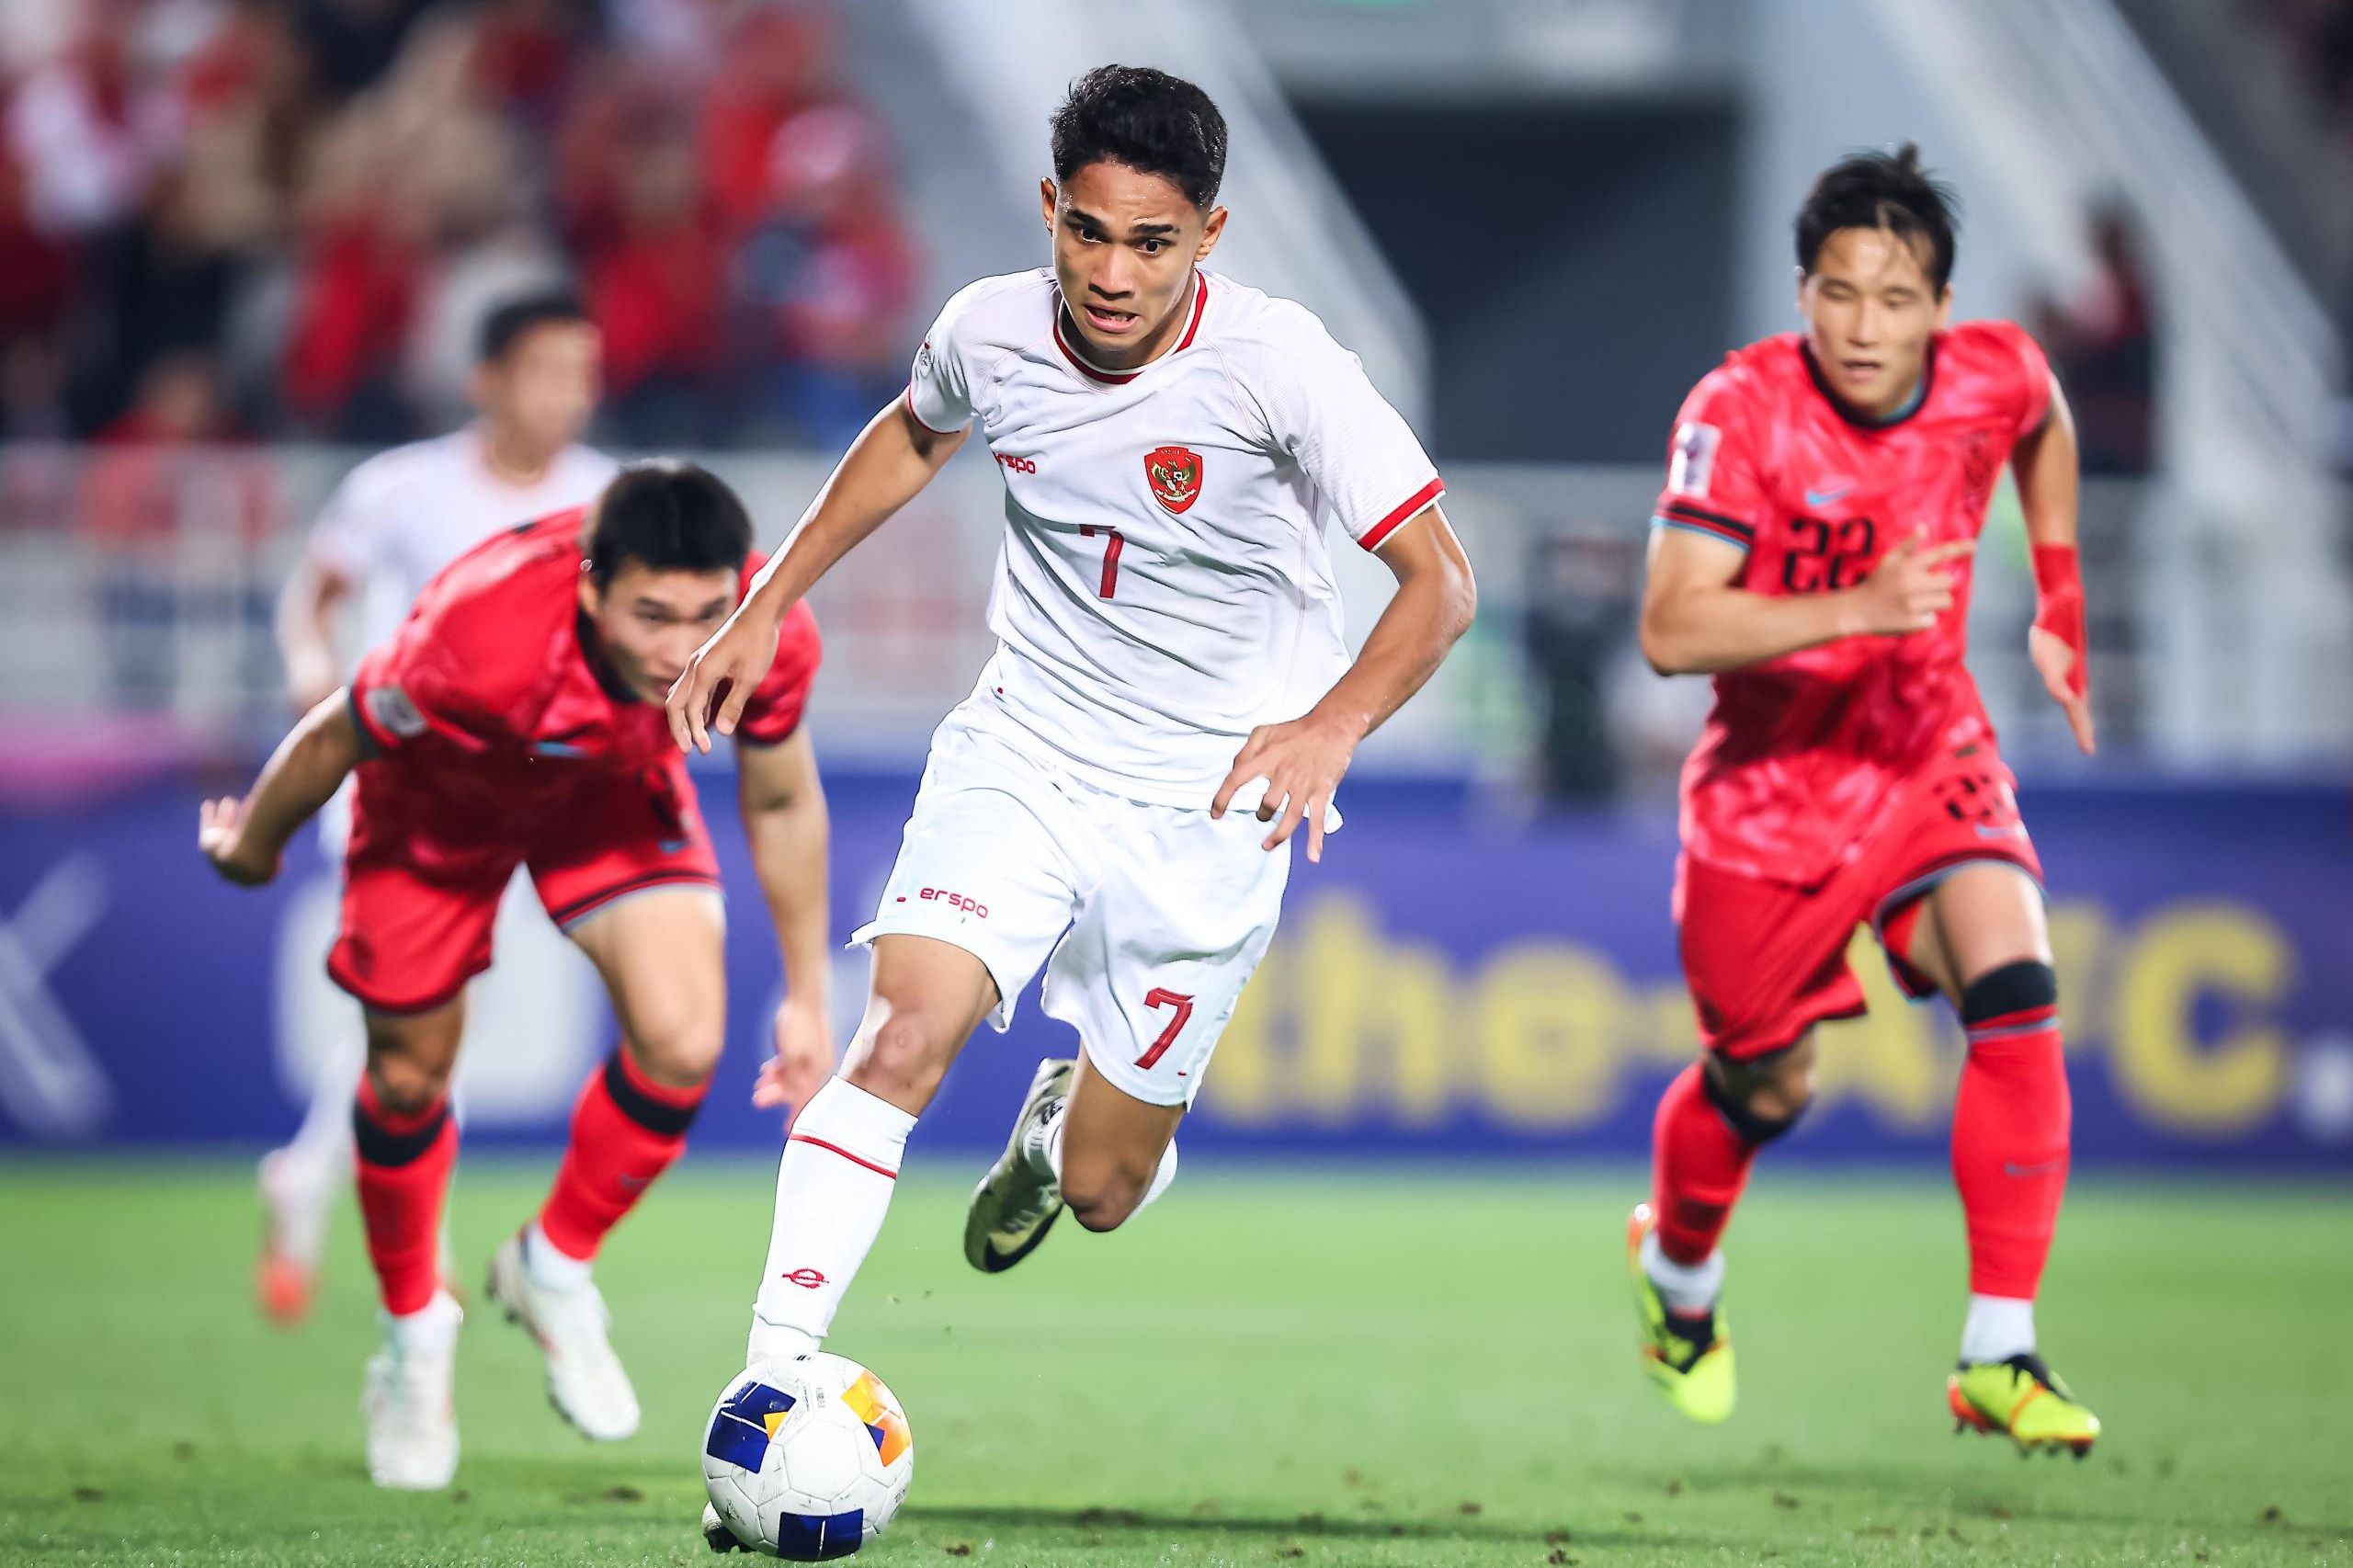 Pesepak bola Timnas U-23 Indonesia Marselino Ferdinan (tengah) melewati dua pesepak bola Timnas U-23 Korea Selatan pada babak perempat final Piala Asia U-23 2024 di Stadion Abdullah bin Khalifa, Doha, Qatar, Jumat (26/4/2024) dini hari. Timnas U-23 Indonesia lolos ke semifinal Piala Asia U-23 setelah mengalahkan Korea Selatan melalui adu pinalti dengan agregat 11-10, setelah sebelumnya bermain imbang dengan skor 2-2.